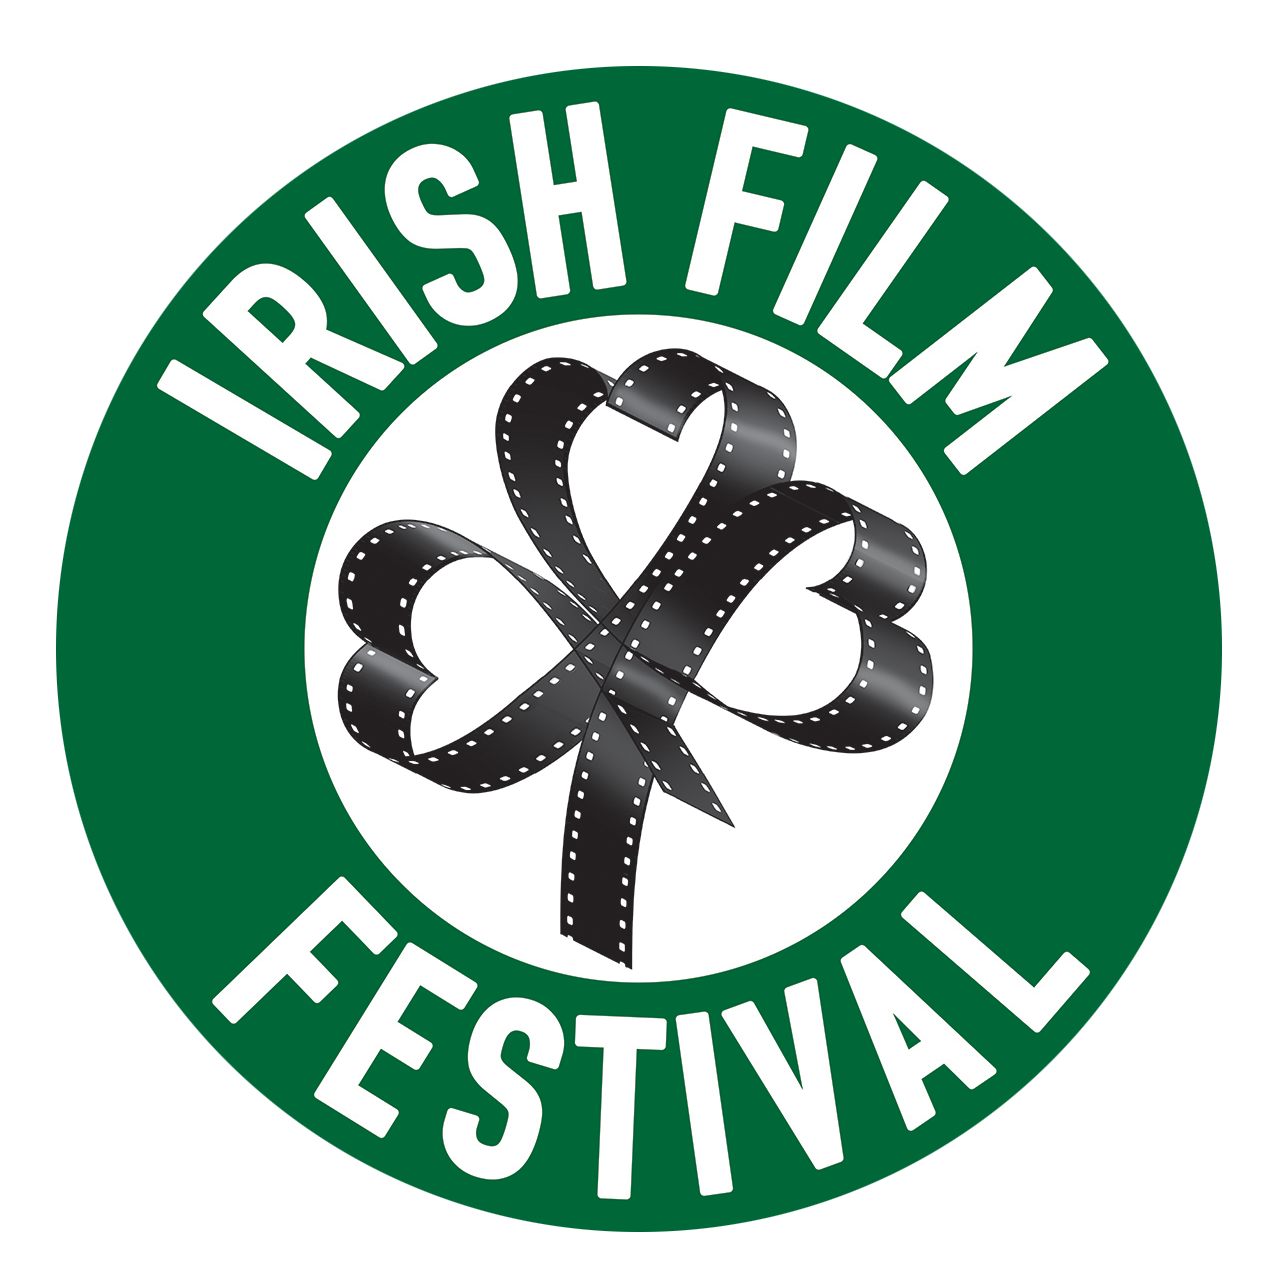 Irish Film Festival Australia